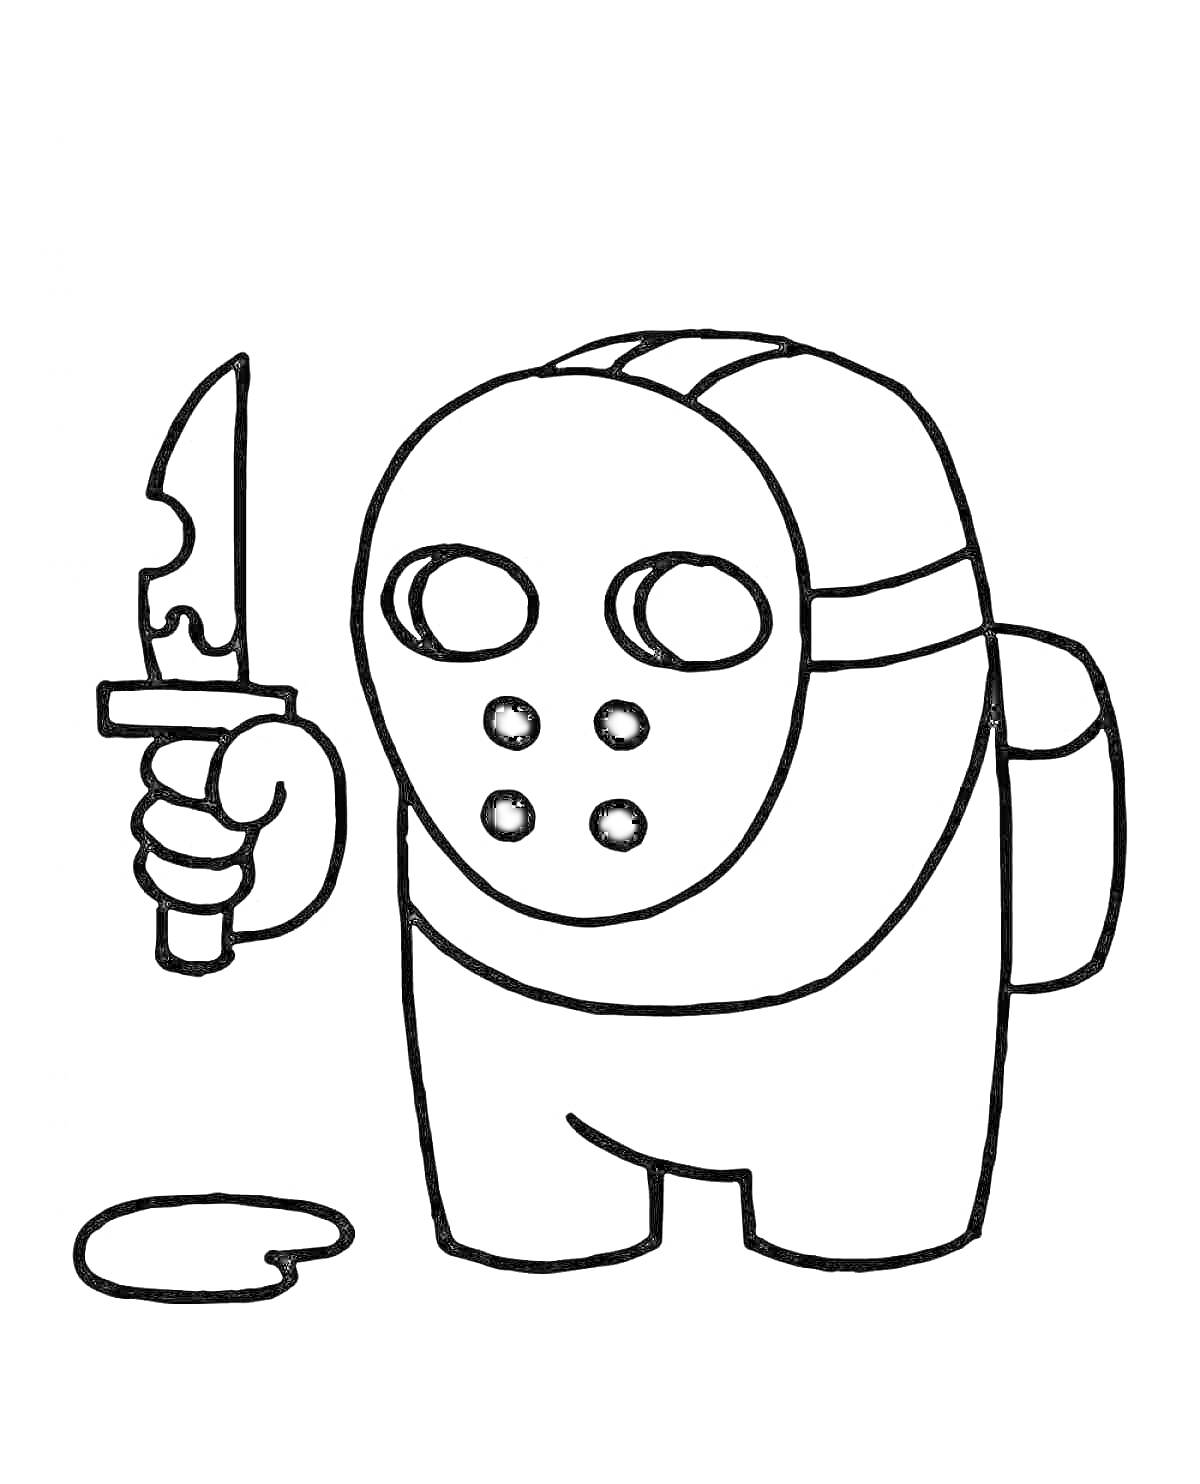 Персонаж Among Us с маской и ножом